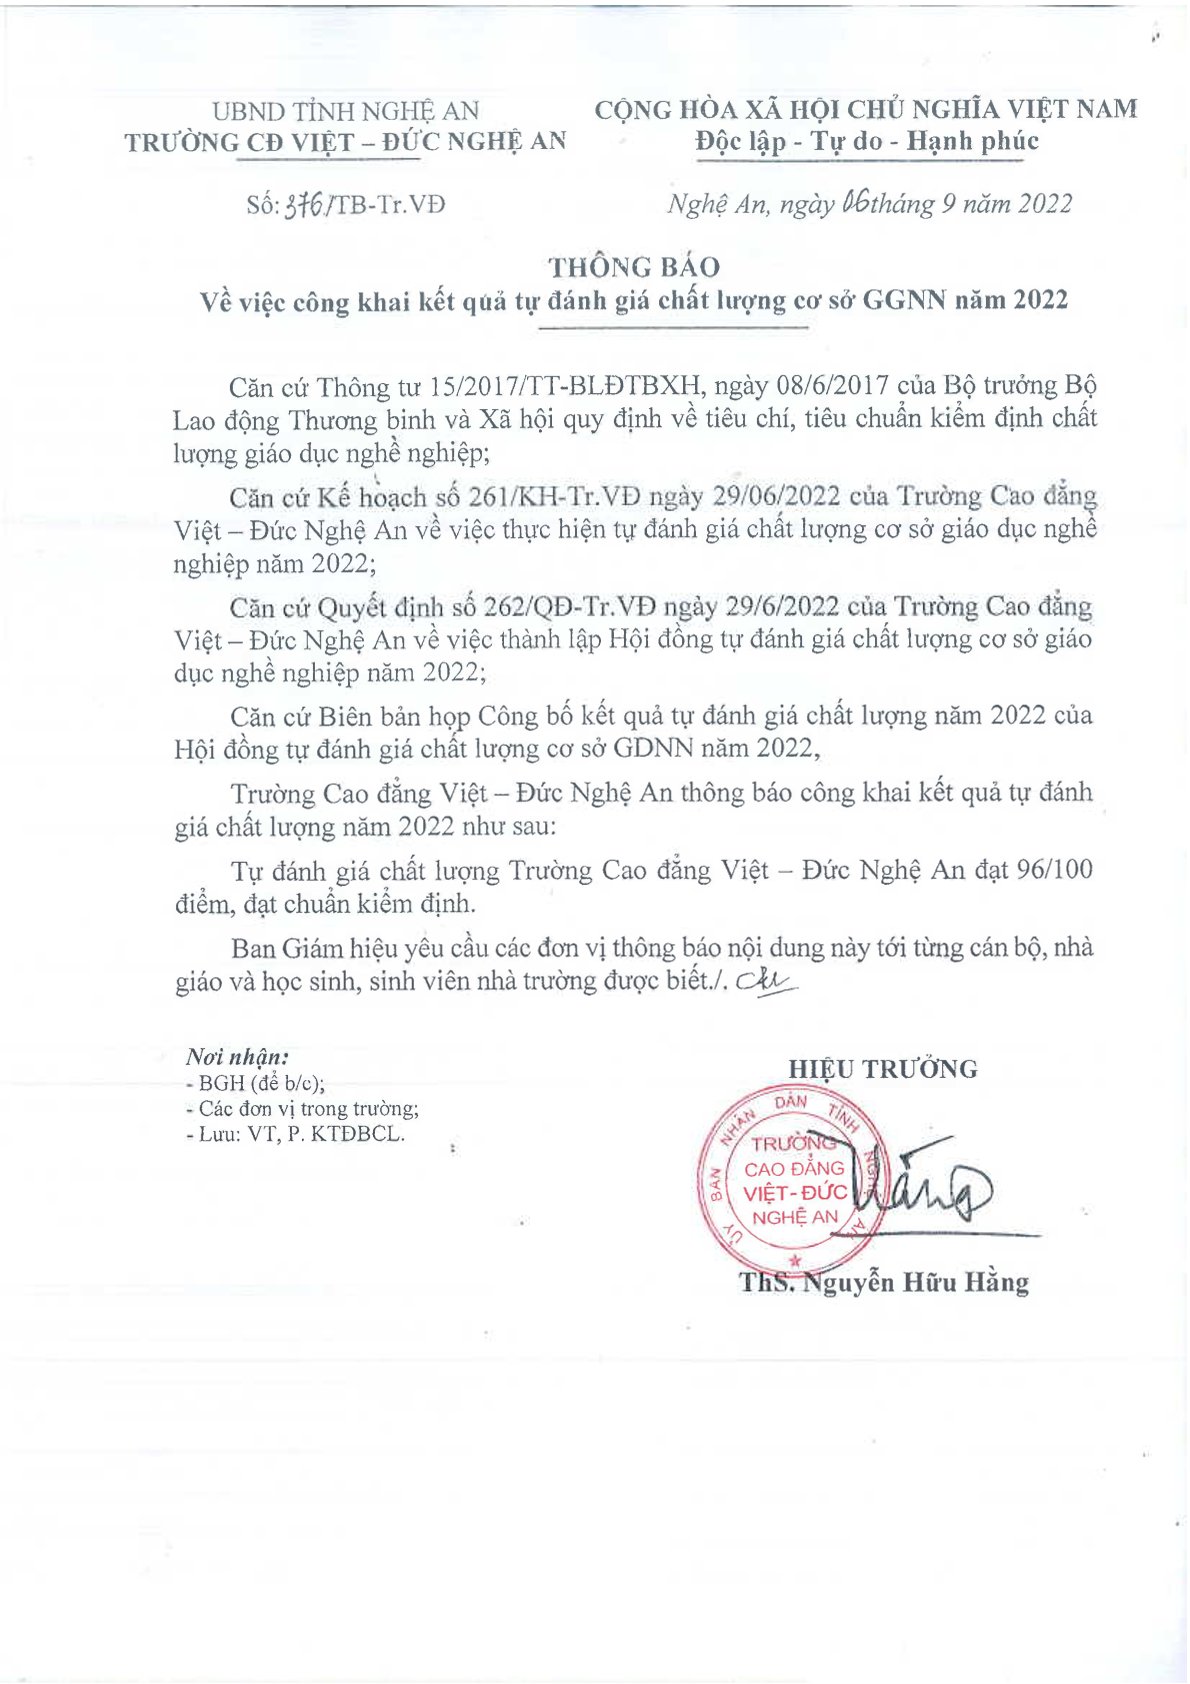 Thông báo số 376/TB-Tr.VĐ ngày 06/9/2022 của Trường Cao đẳng Việt - Đức Nghệ An về việc Công khai kết quả tự đánh giá chất lượng cơ sở GDNN năm 2022